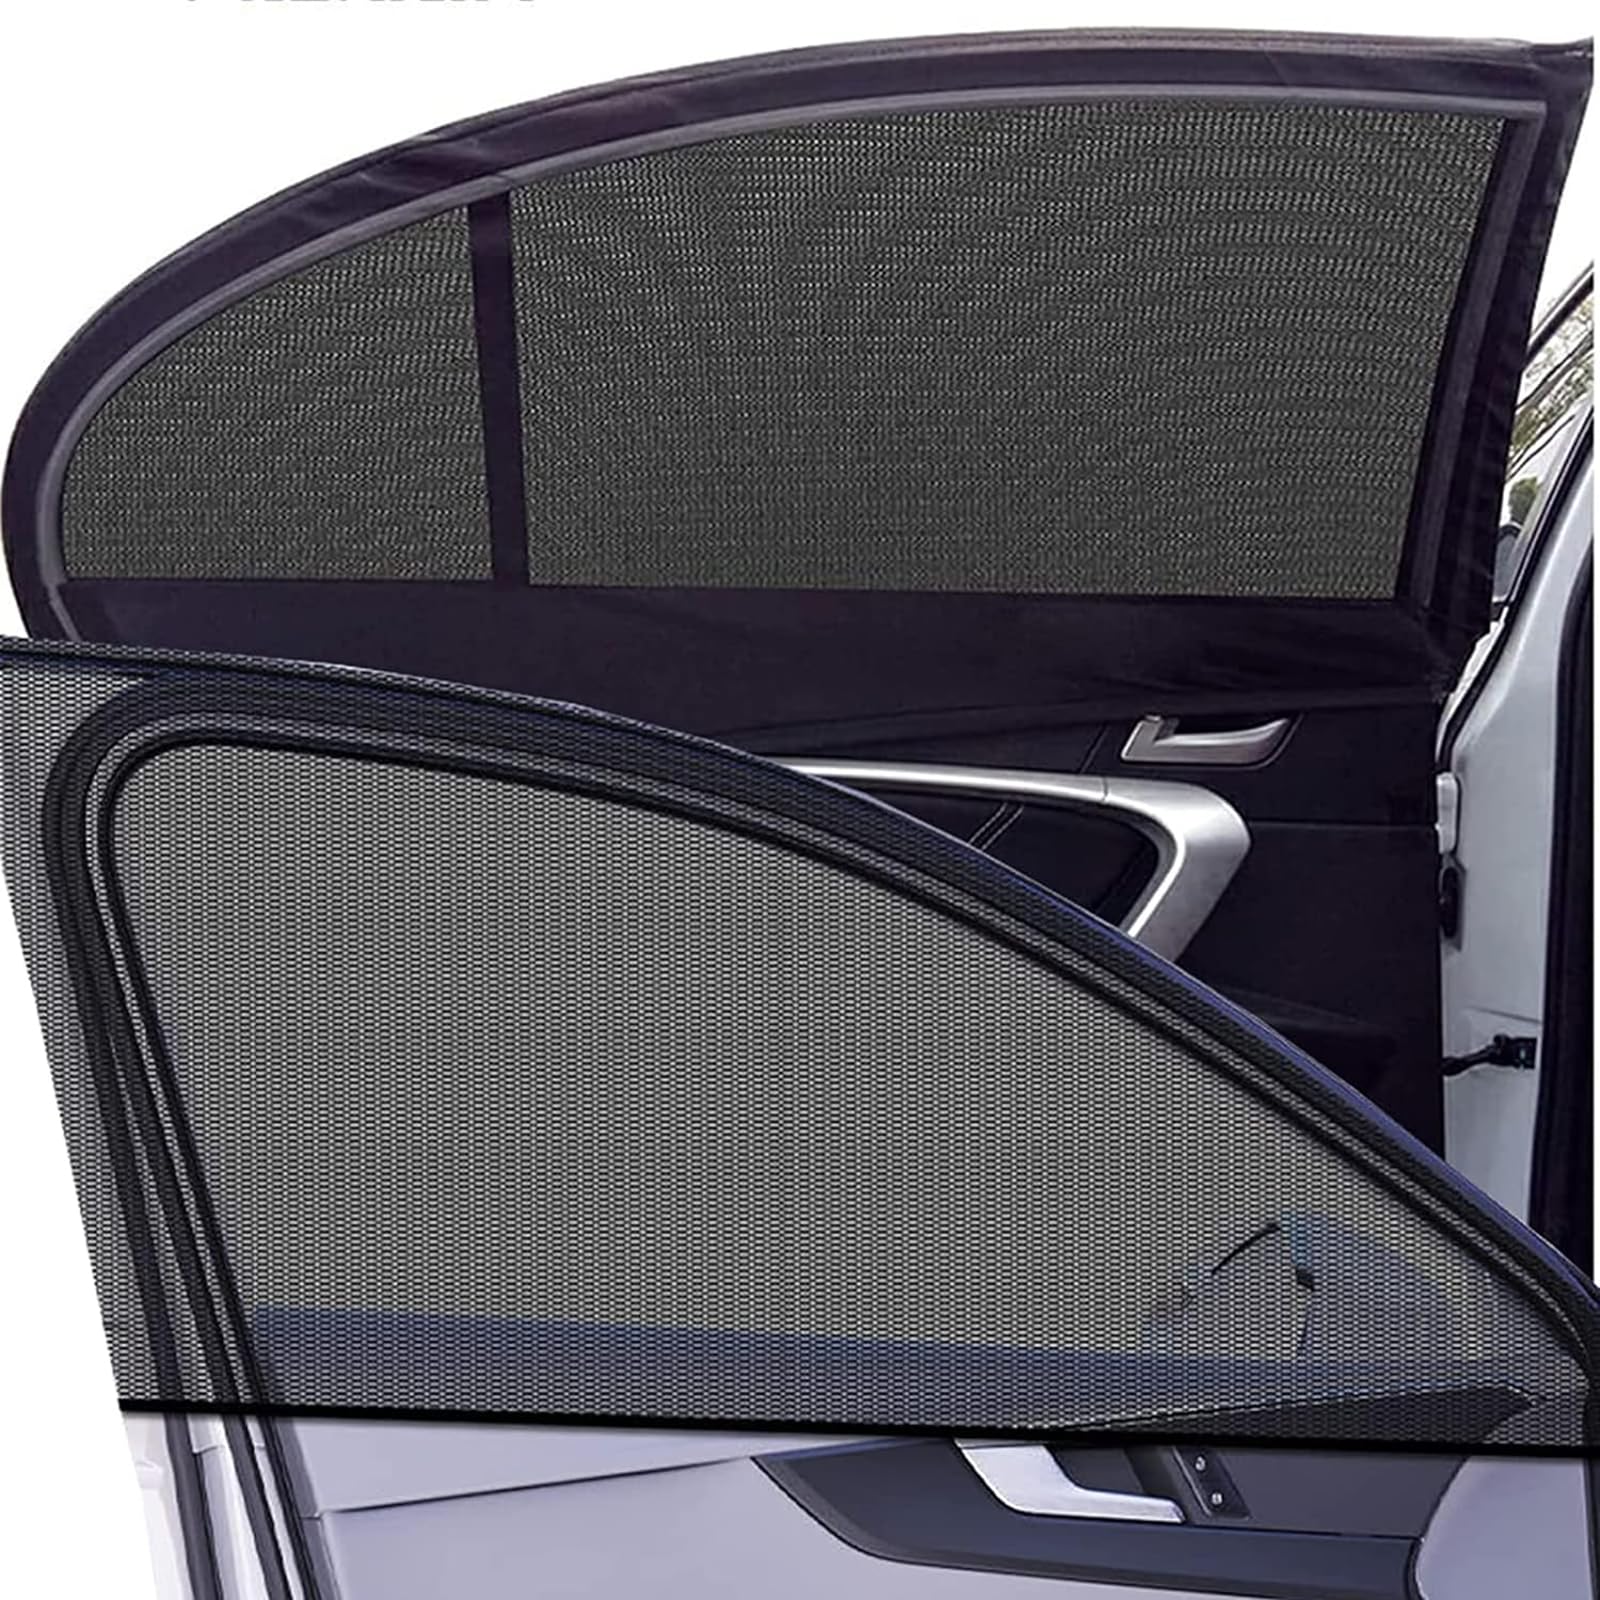 2 Stück Sonnenschutz Auto Baby Für Audi A3 Hatchback 2003-2012, Universal Auto Sonnenblende Seitenfenster Atmungsaktive Netz UV-Schutz und Hitzeschutz Zubehör von JJNIENUS